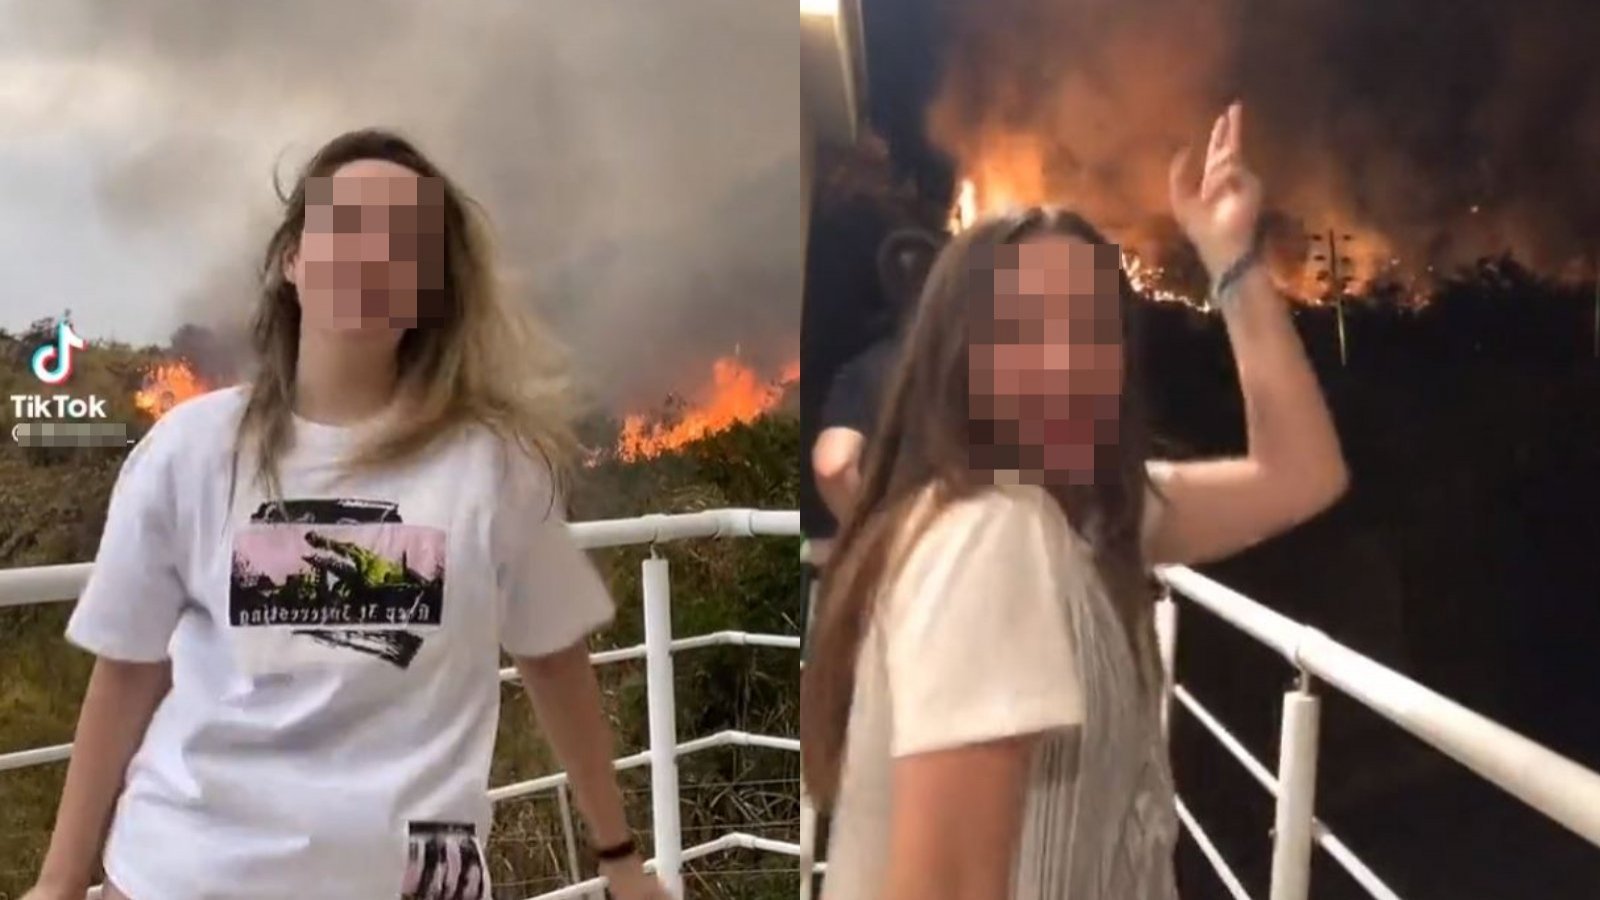 Captura de joven que grabó videos bailando para Tiktok en medio de incendios forestales en Europa